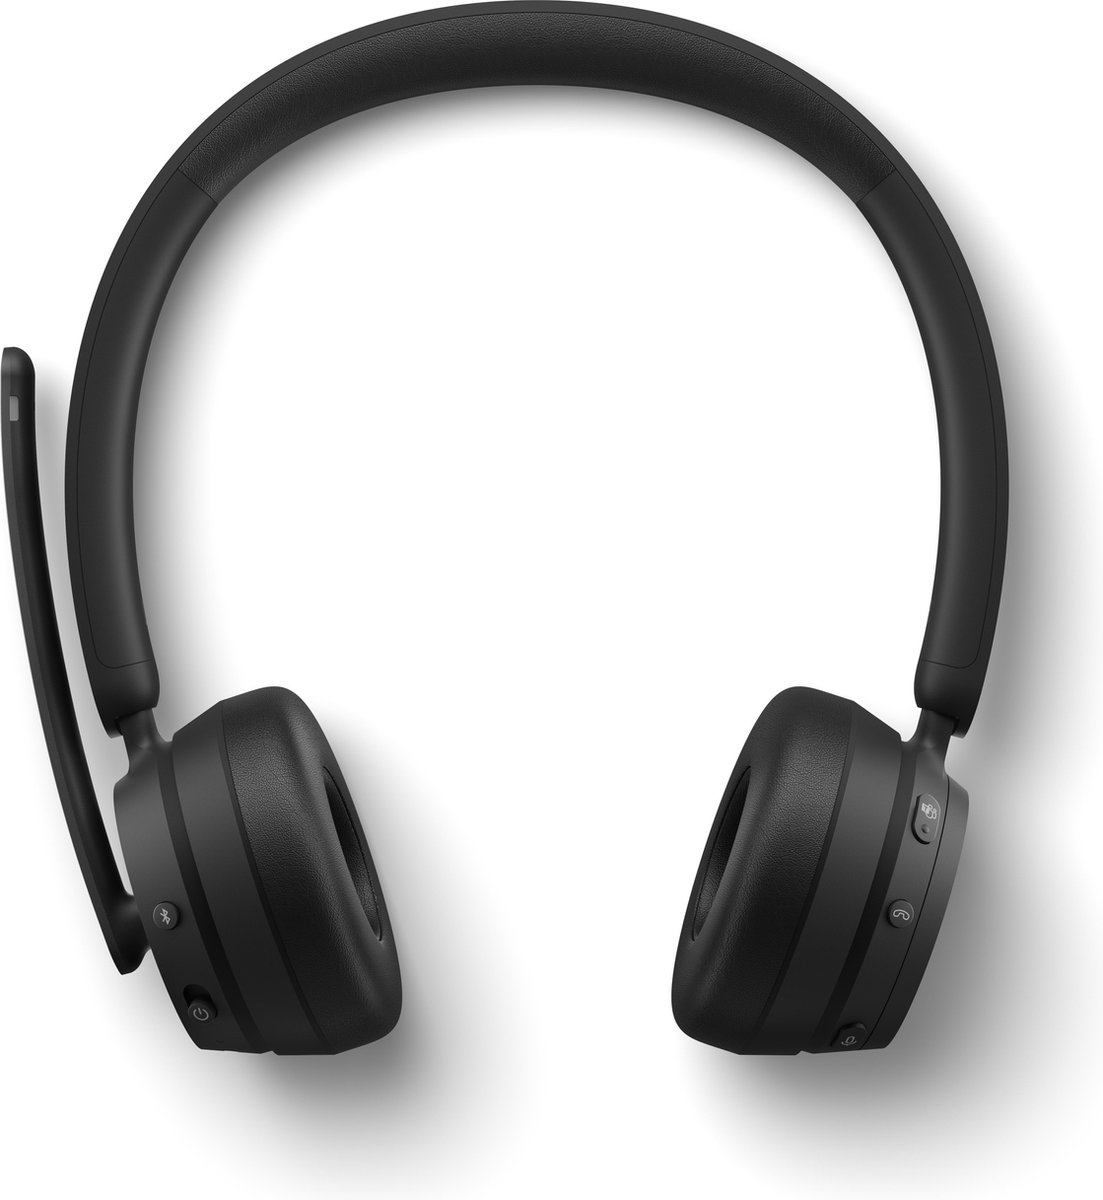 Microsoft Modern Wireless Headset for Business Draadloos Hoofdband Kantoor/callcenter Bluetooth Zwart